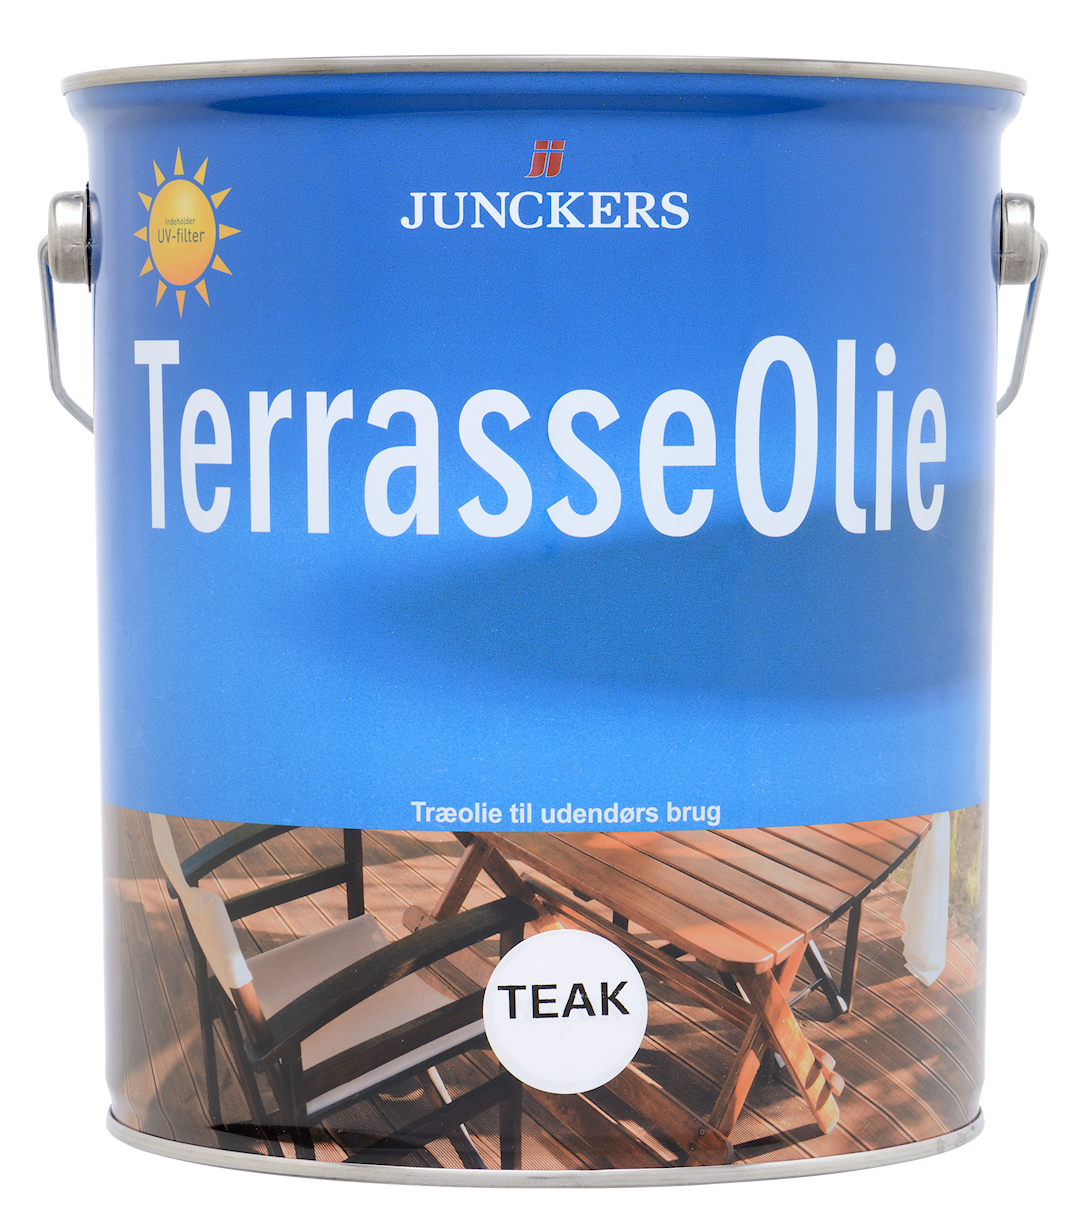 1: Junckers Terrasseolie Teak 5 liter